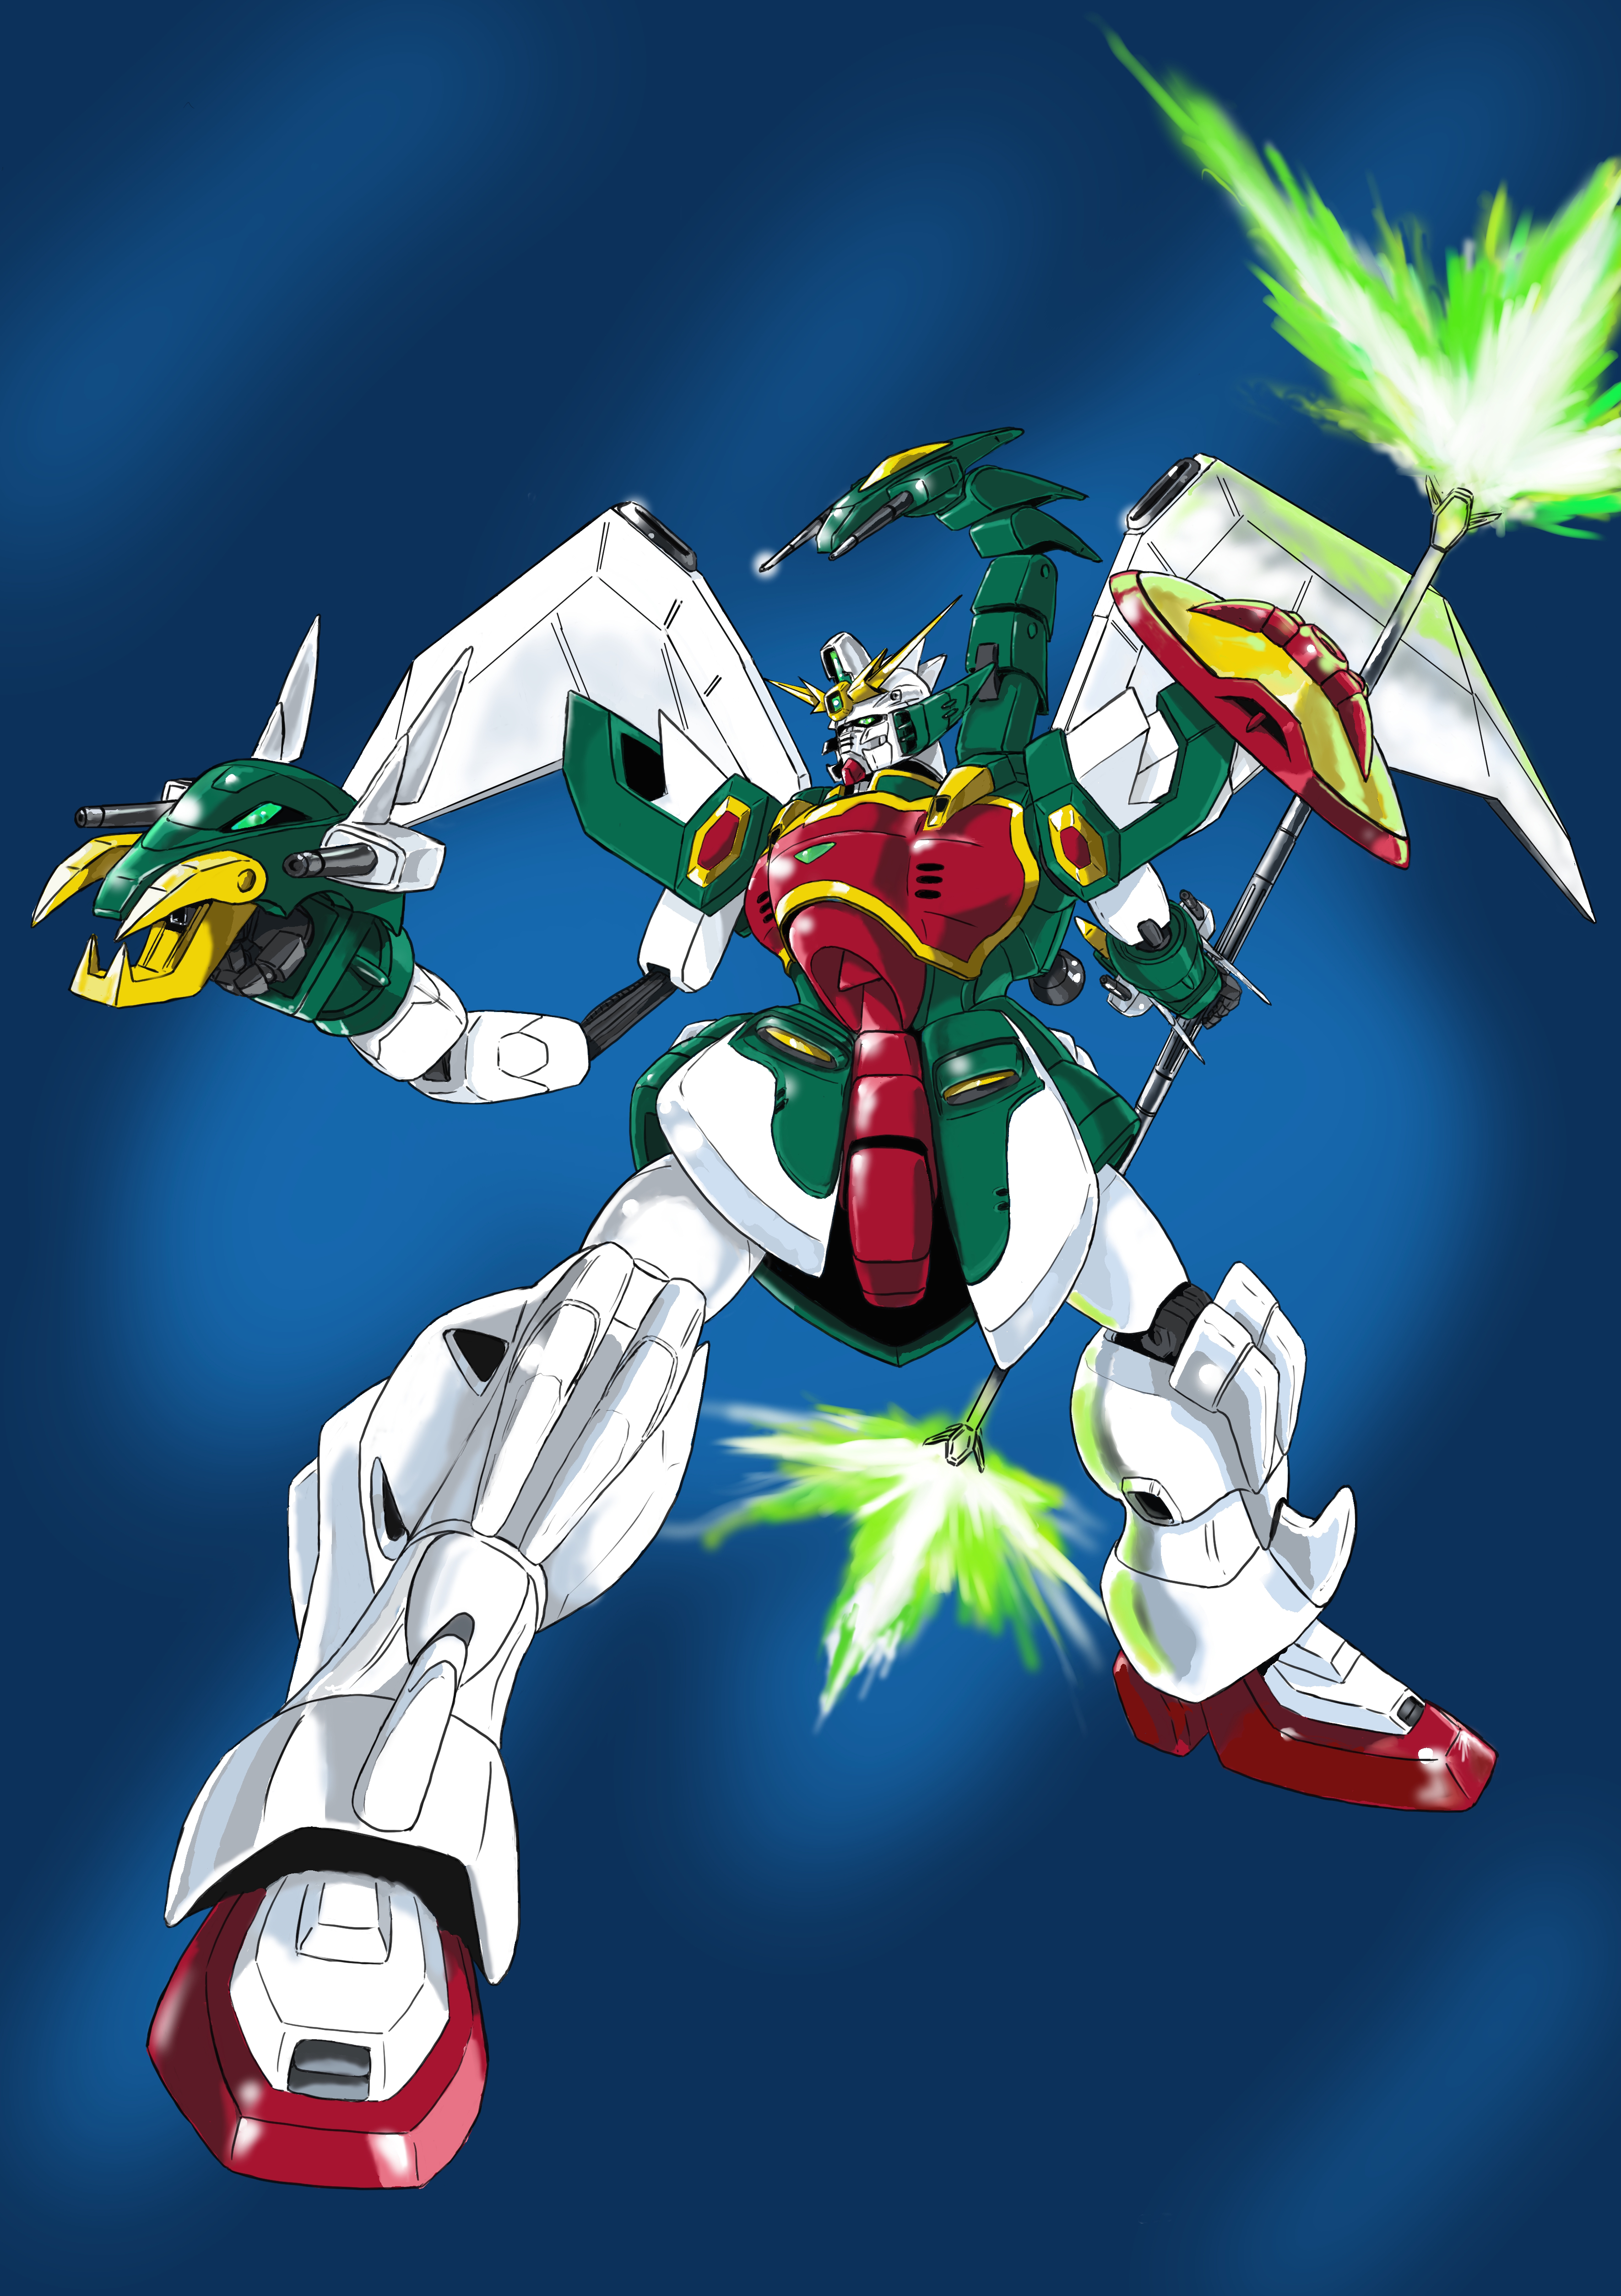 Anime 3541x5016 anime mechs Super Robot Taisen Gundam Mobile Suit Gundam Wing Altron Gundam artwork digital art fan art